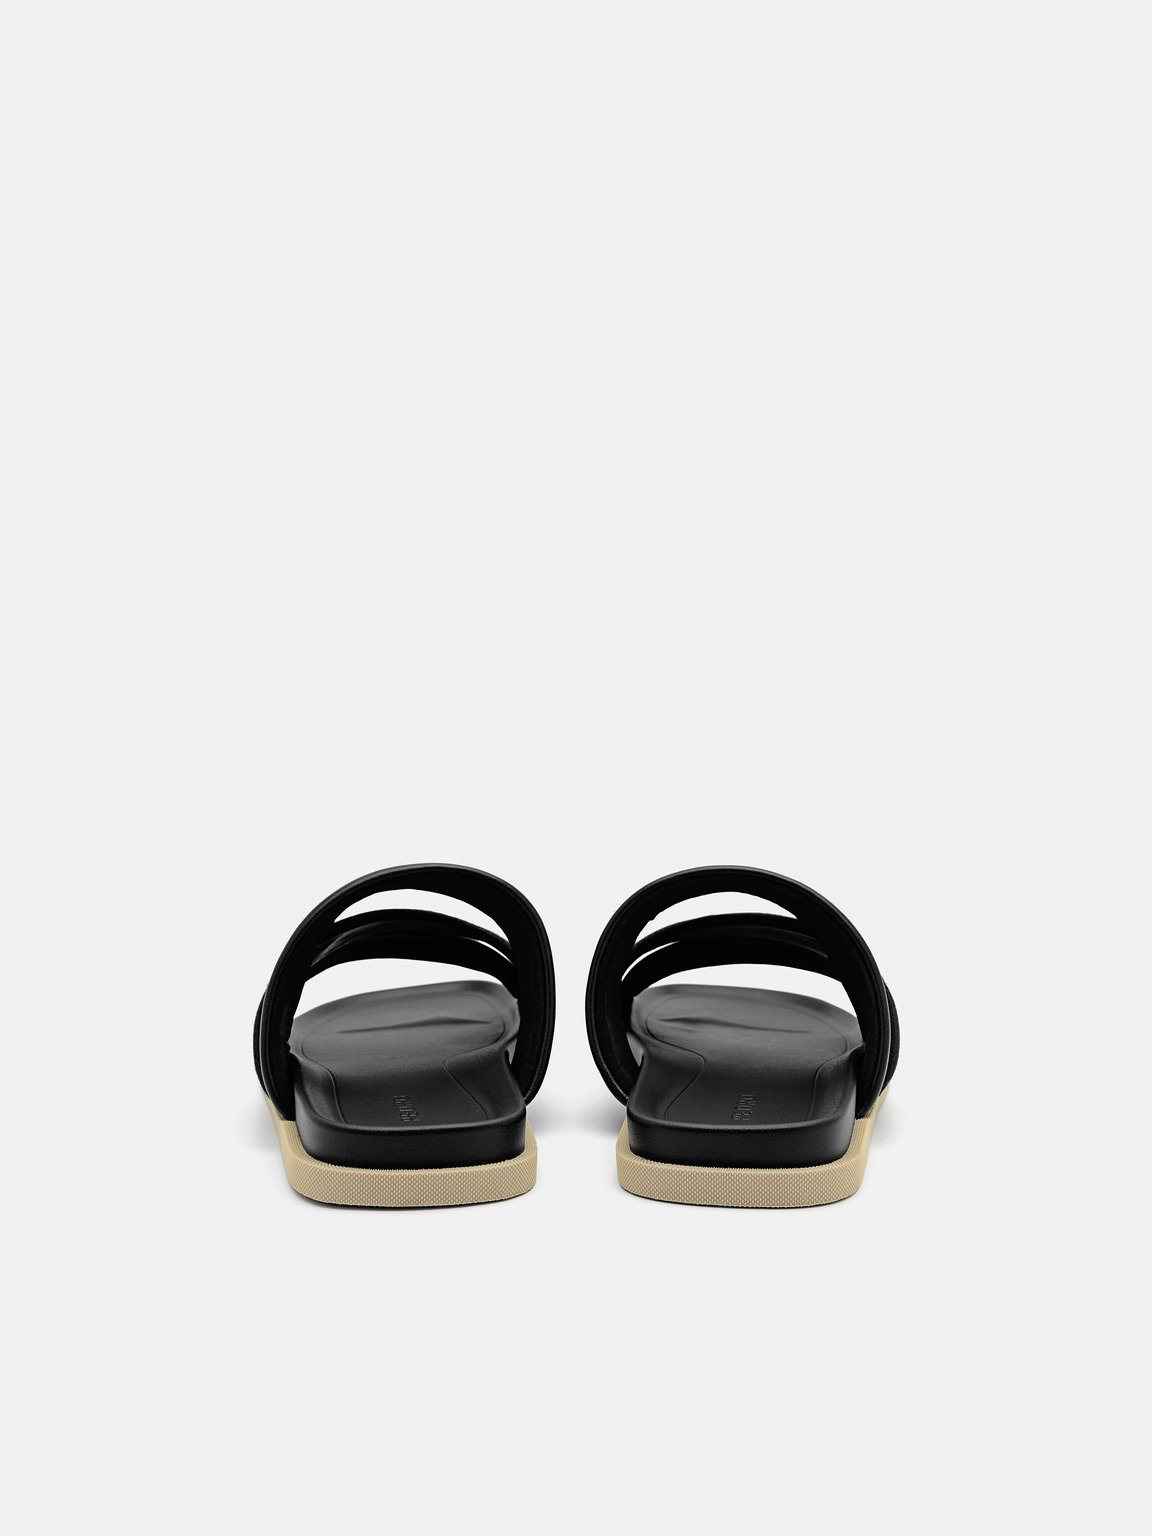 Tri-Band Slide Sandals, Black